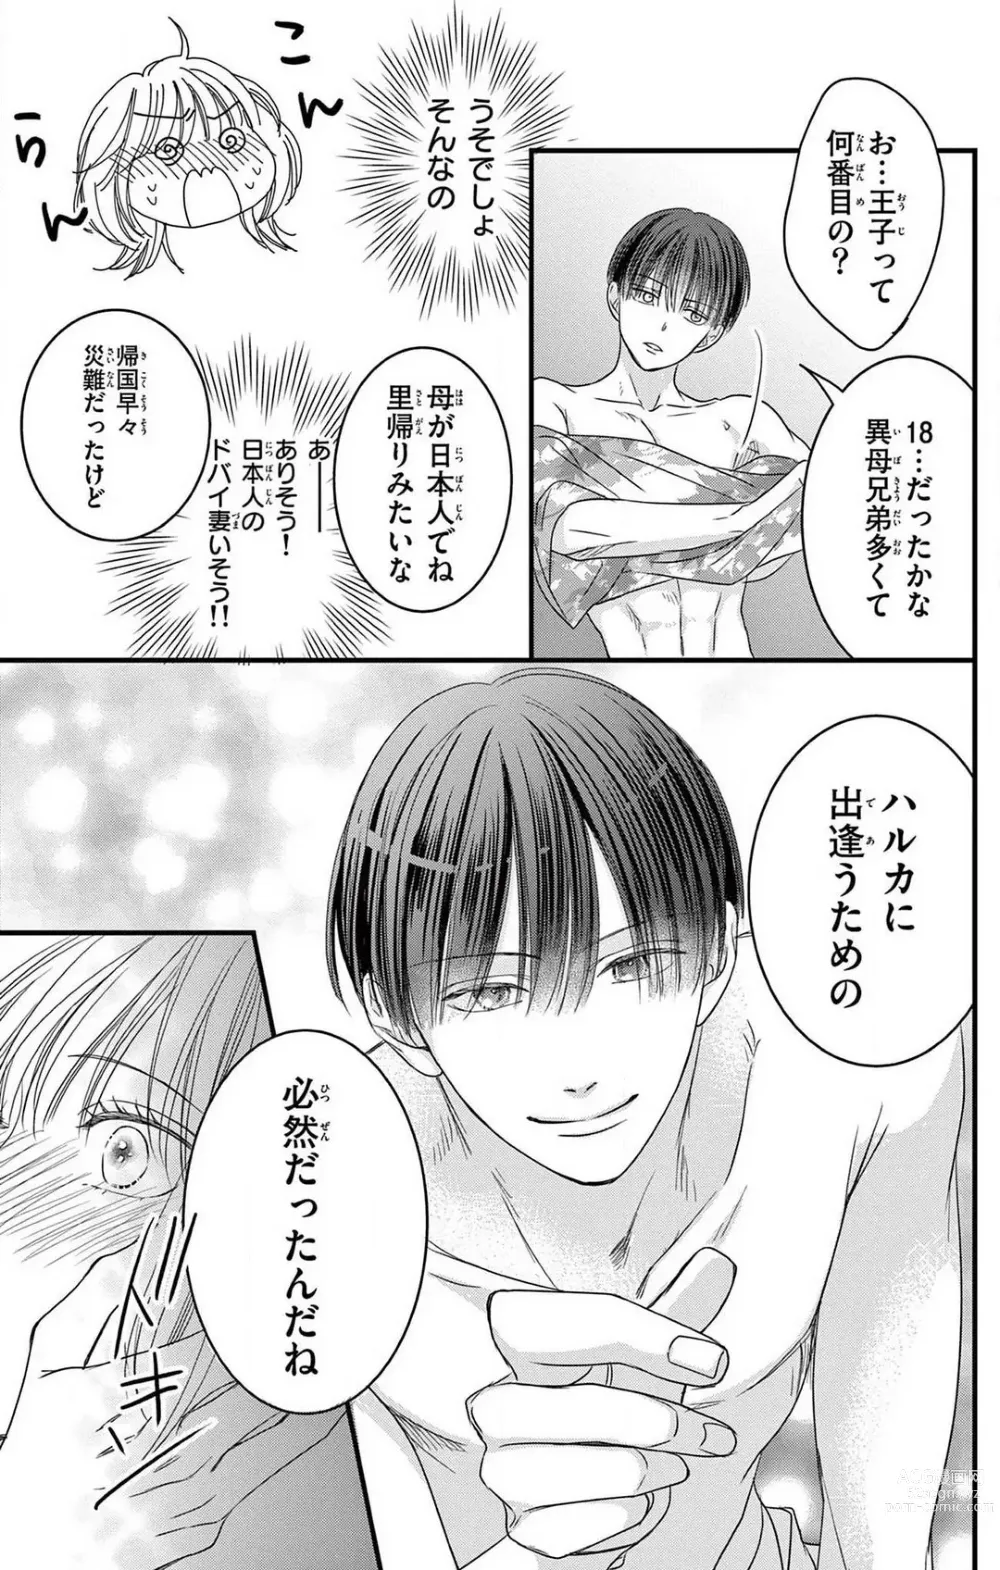 Page 23 of manga Kuzu wa Kuzu Demo Kao ga ii Kuzu 1-7